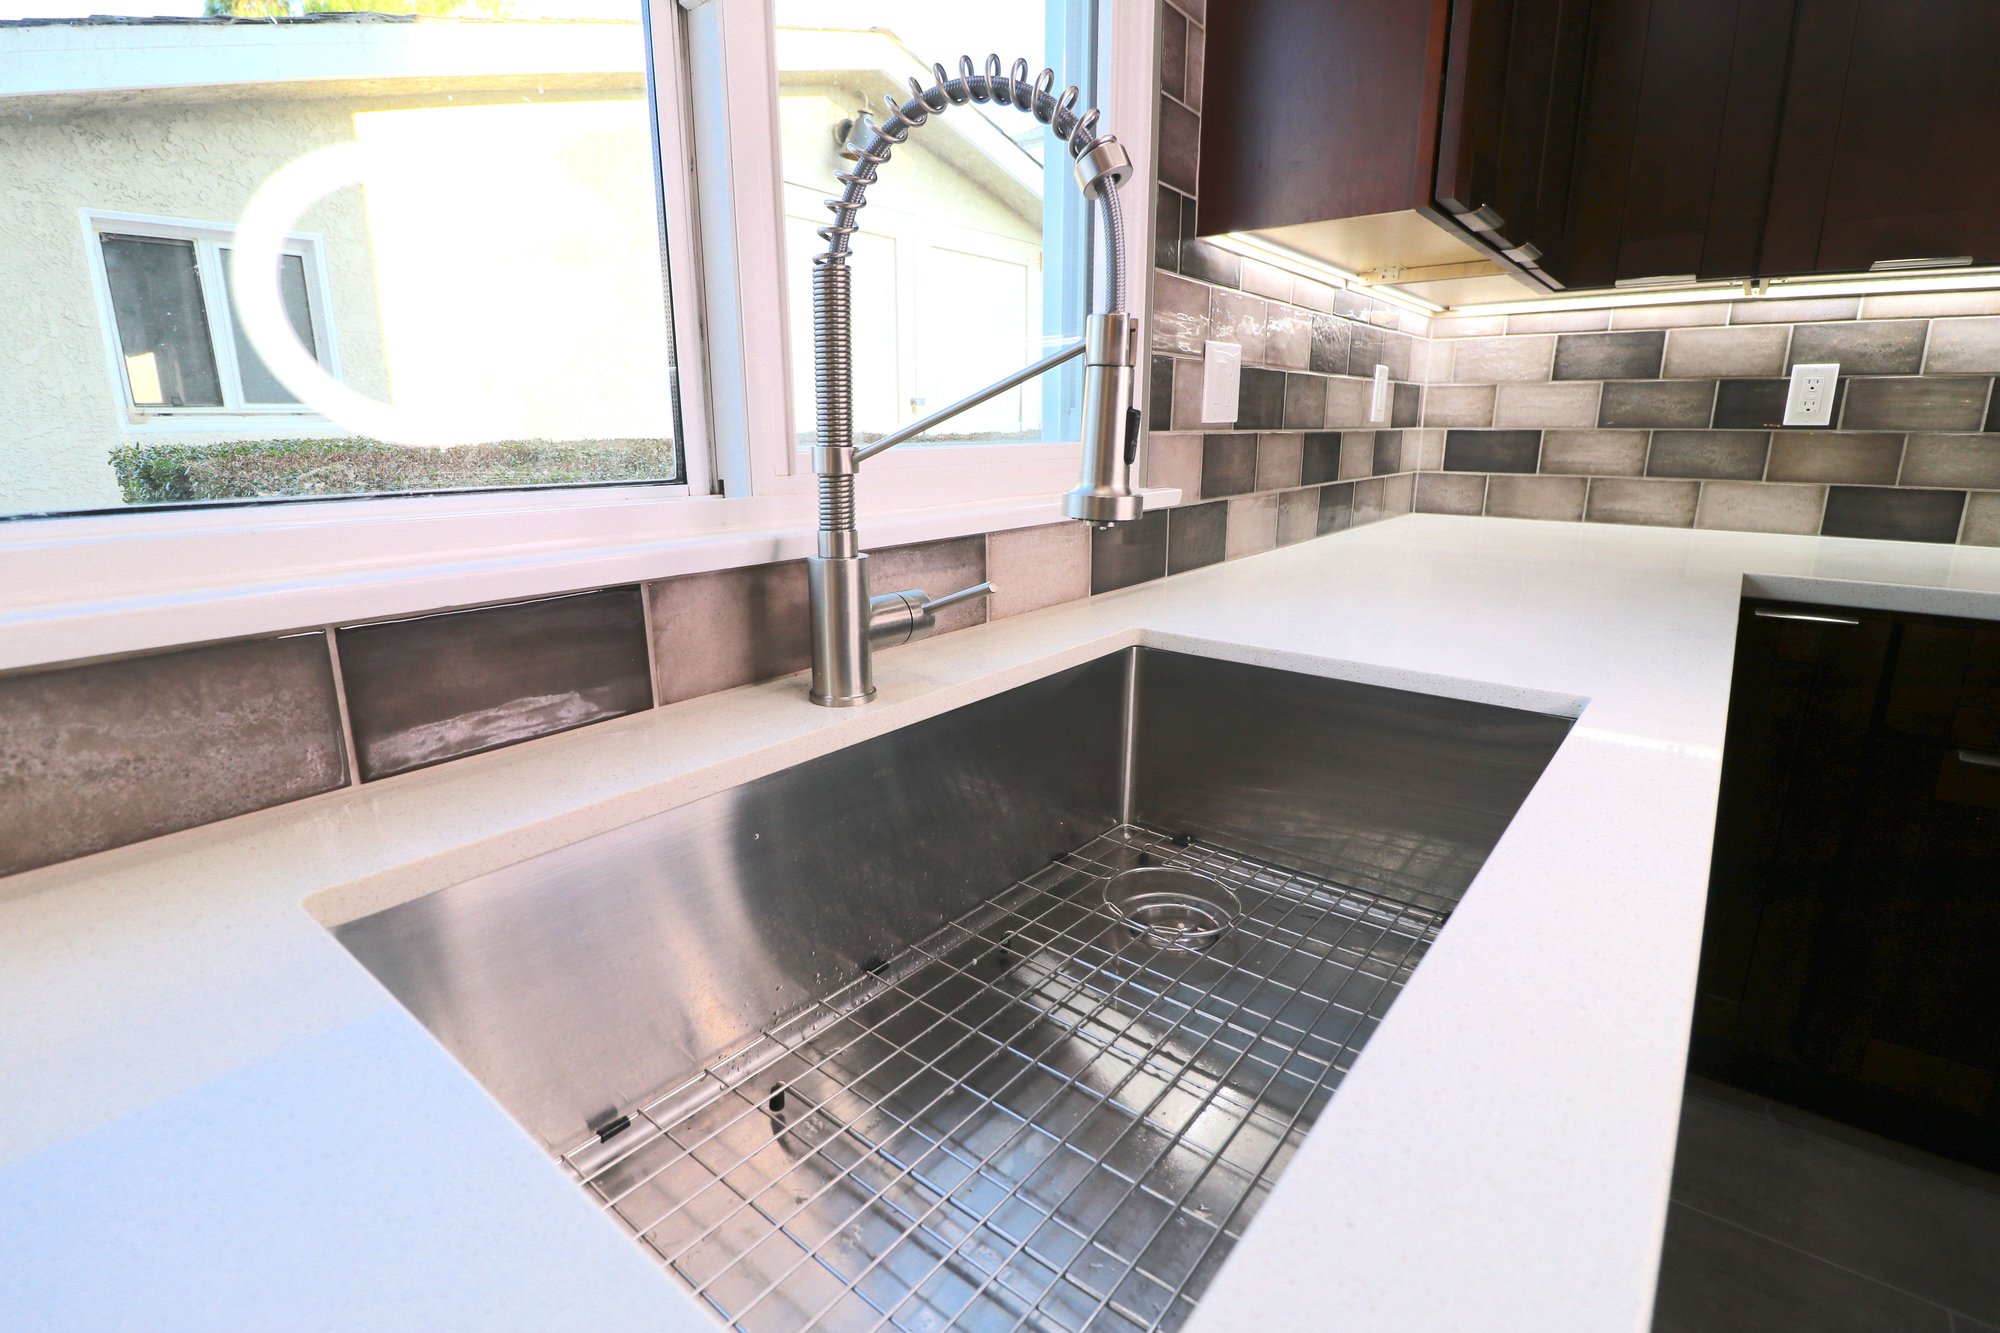 Redondo Beach Kitchen - best general contractor - kraus kitchen faucet stainless steel